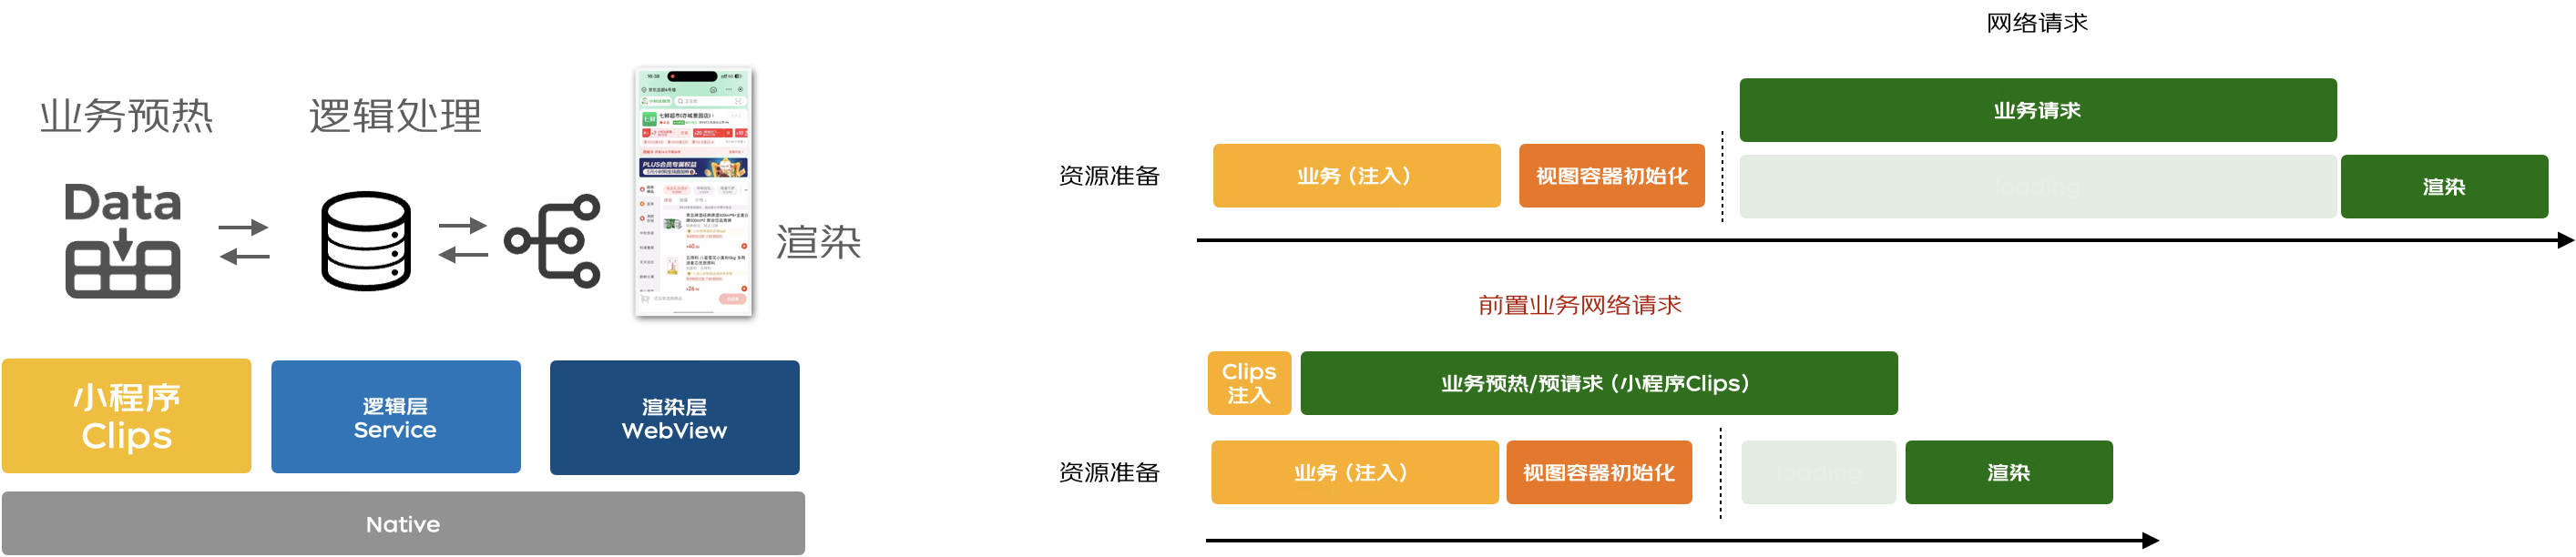 【最佳实践】京东小程序-LBS业务场景的性能提升 | 京东云技术团队